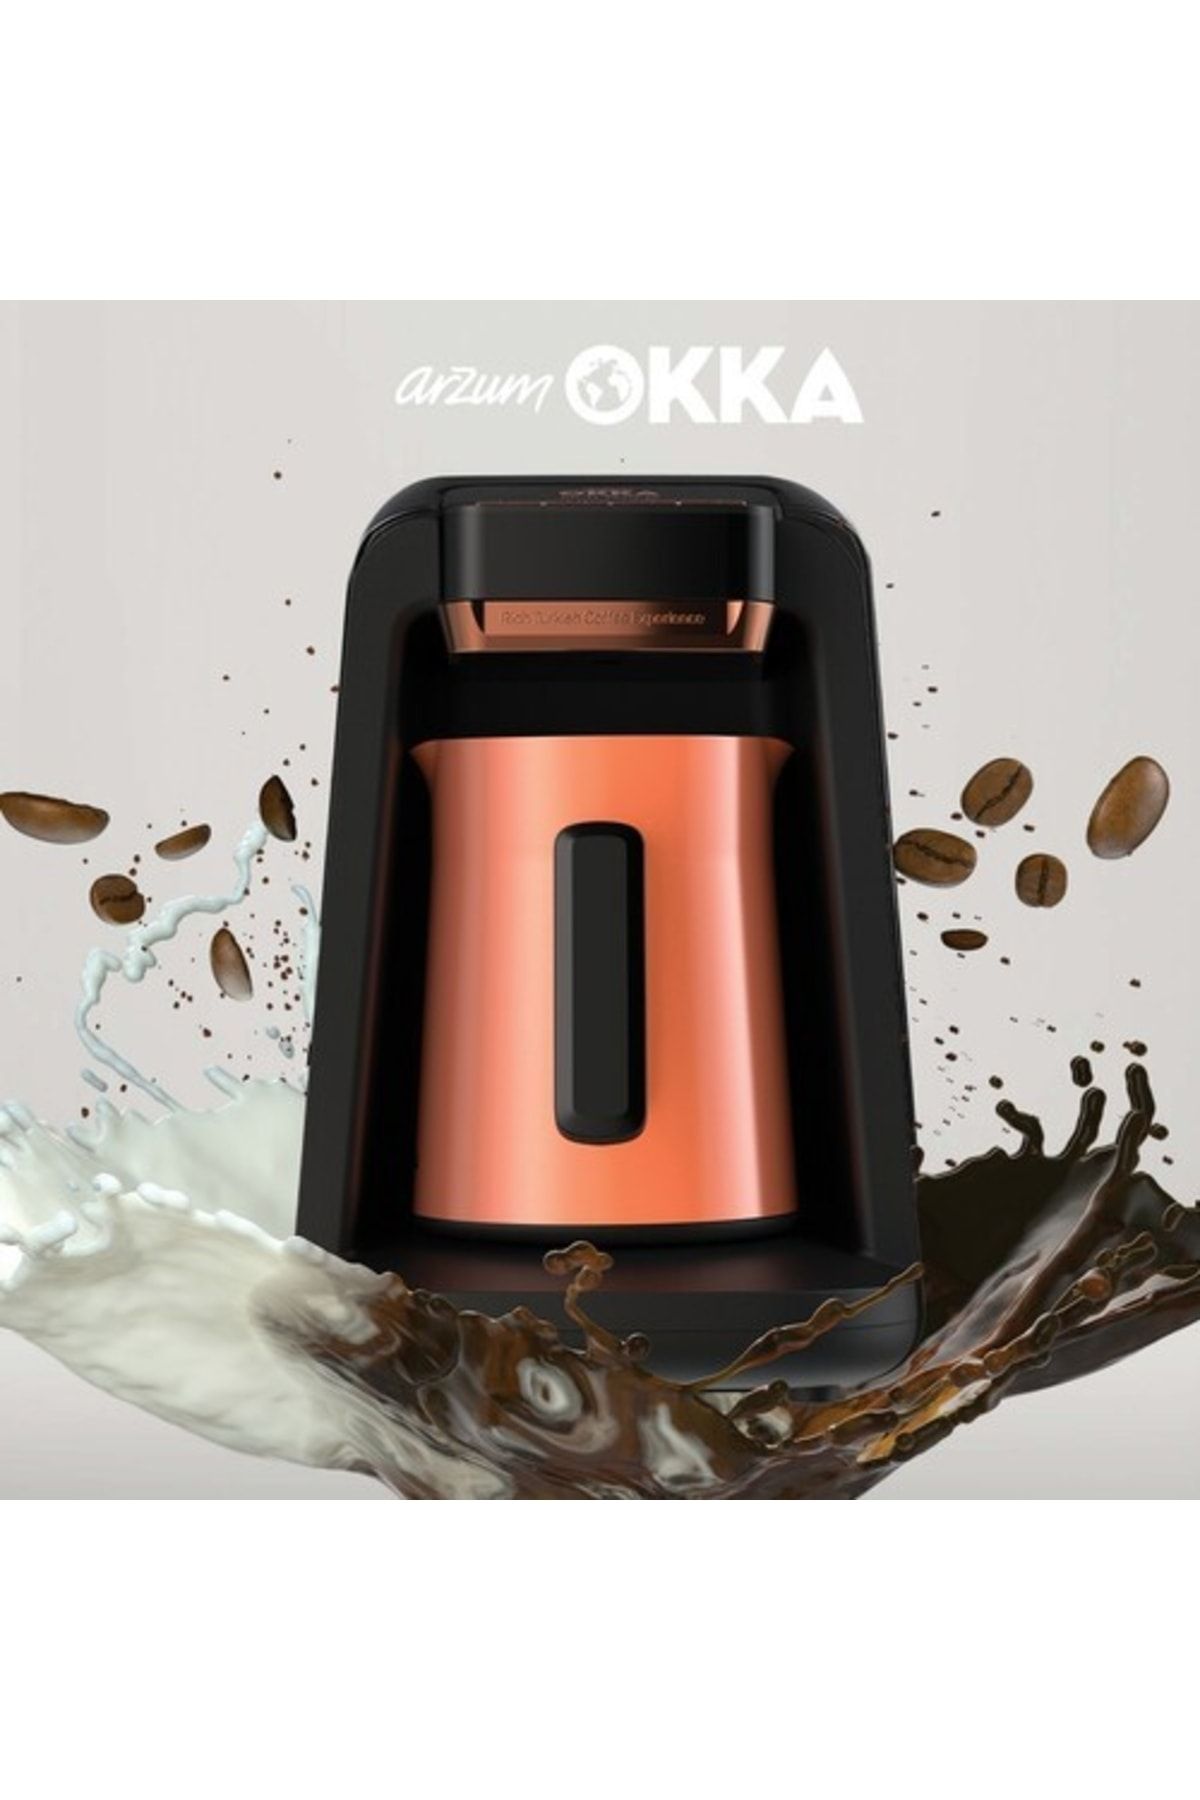 Arzum Ok0012 Okka Rich Spin M Türk Kahve Makinesi Bakır